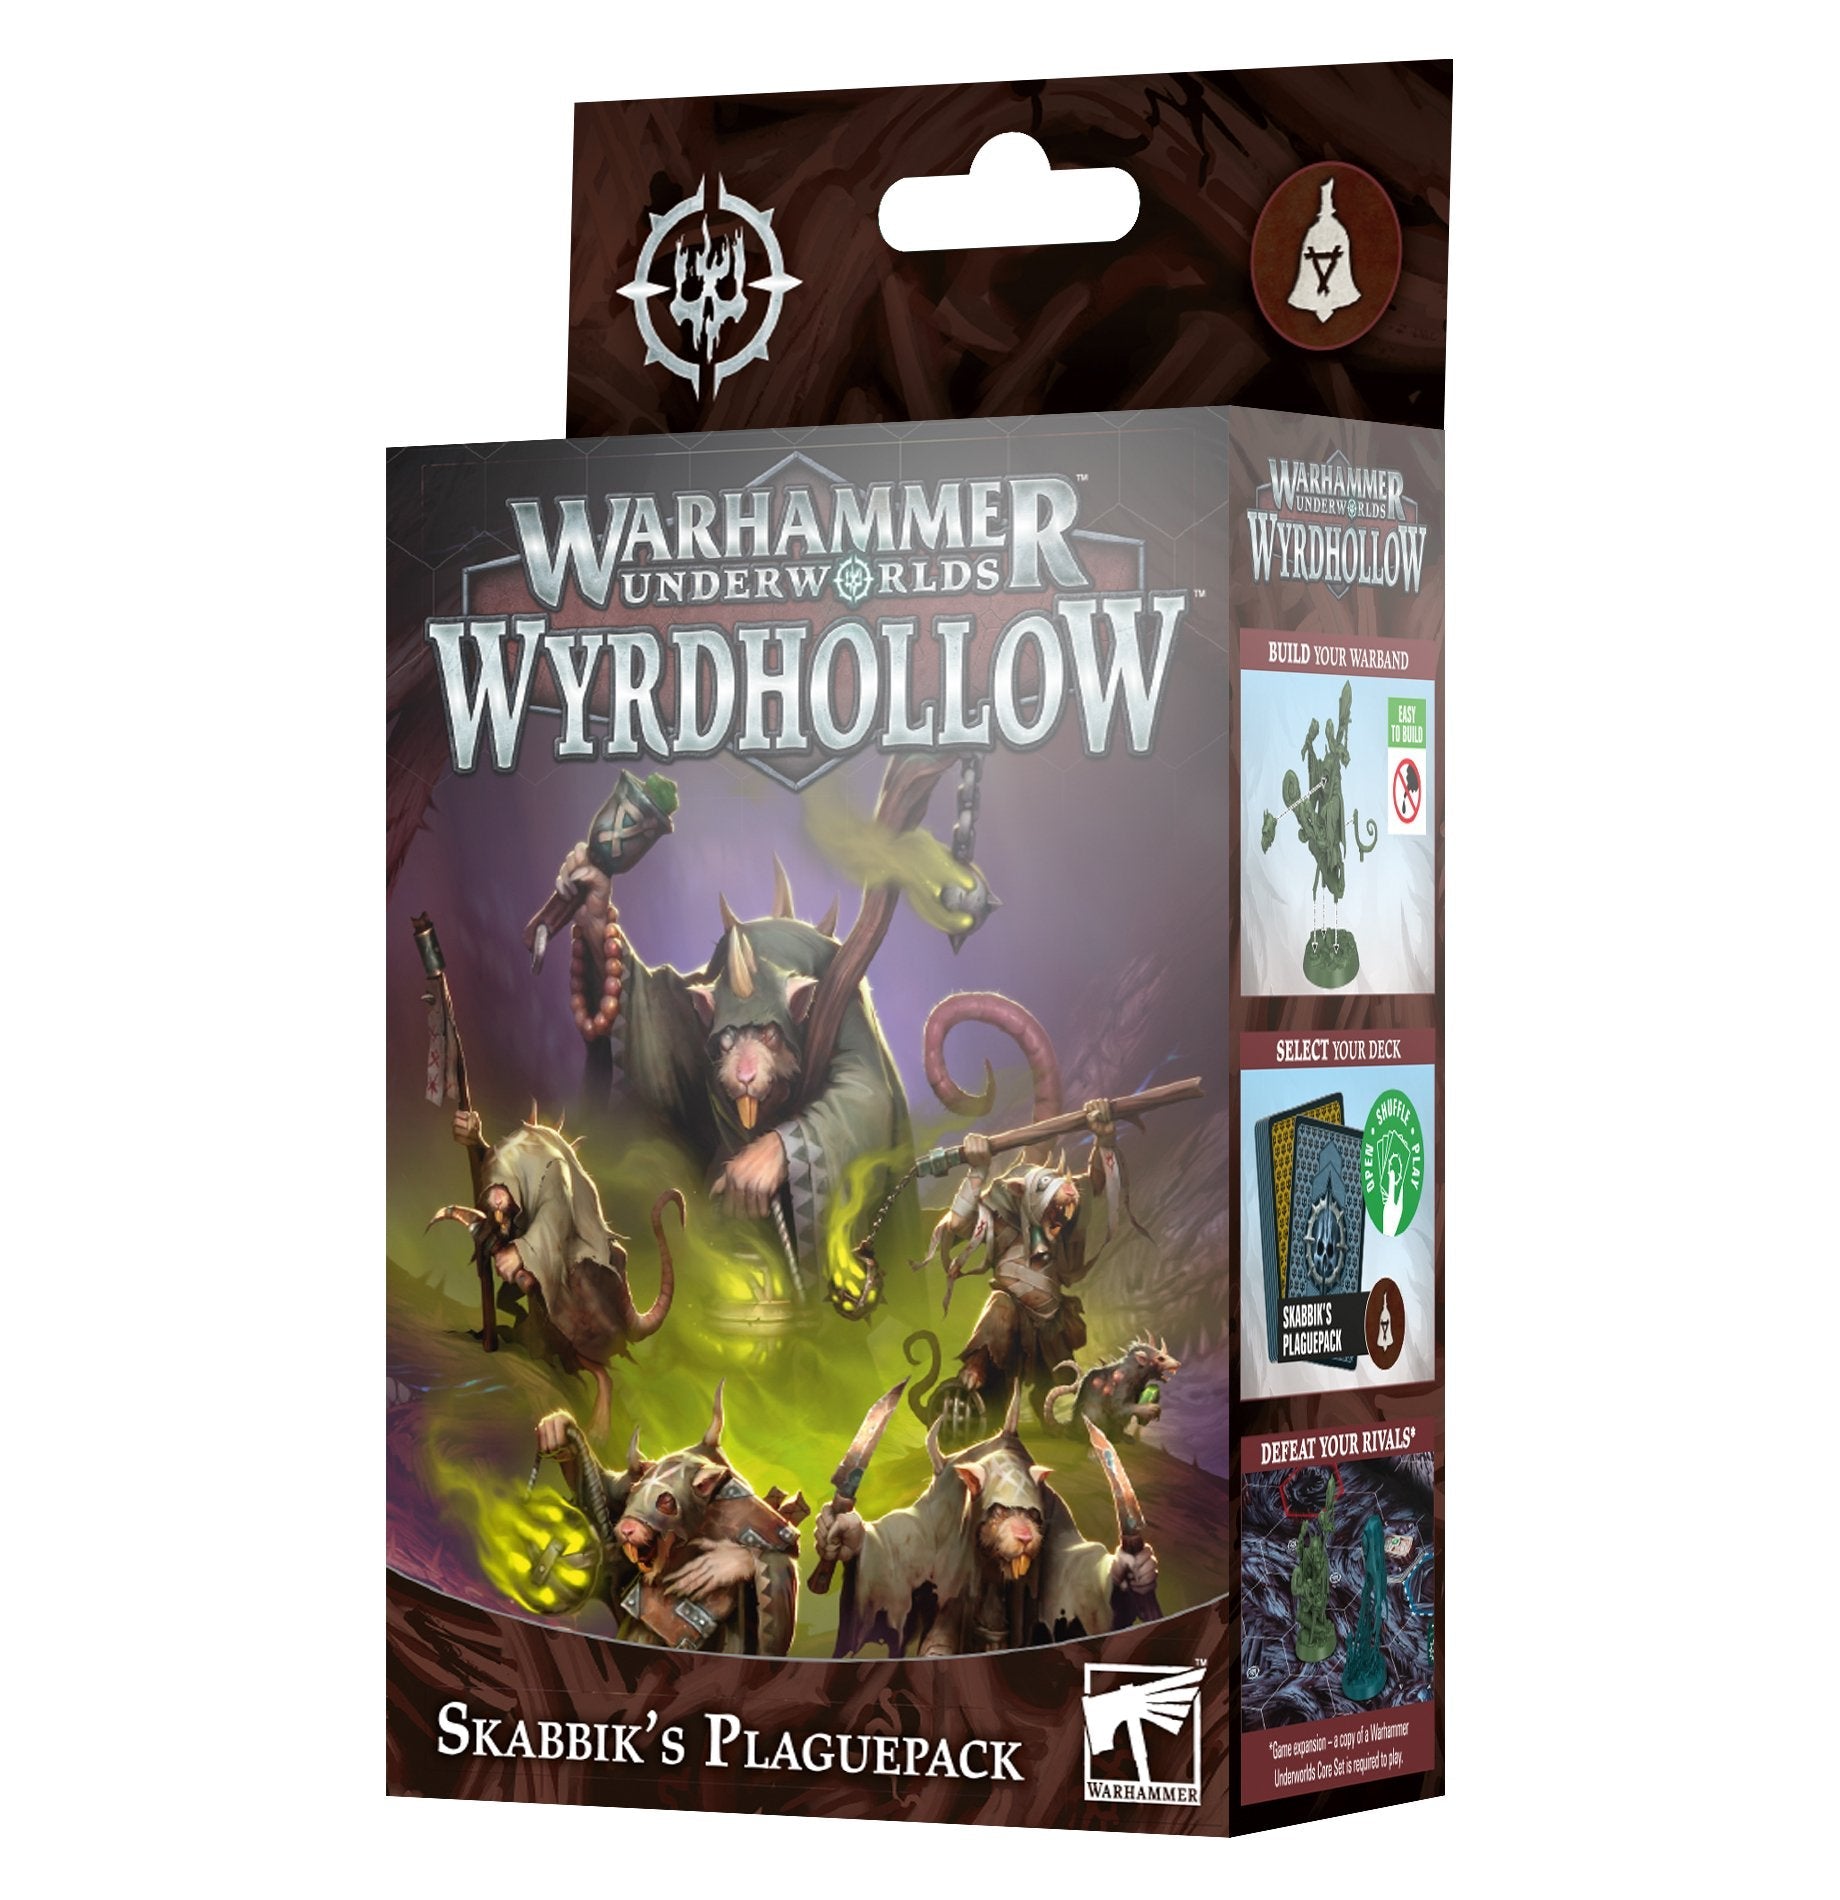 Warhammer Underworlds Wyrdhollow: Skabbik's Plaguepack - Gamescape